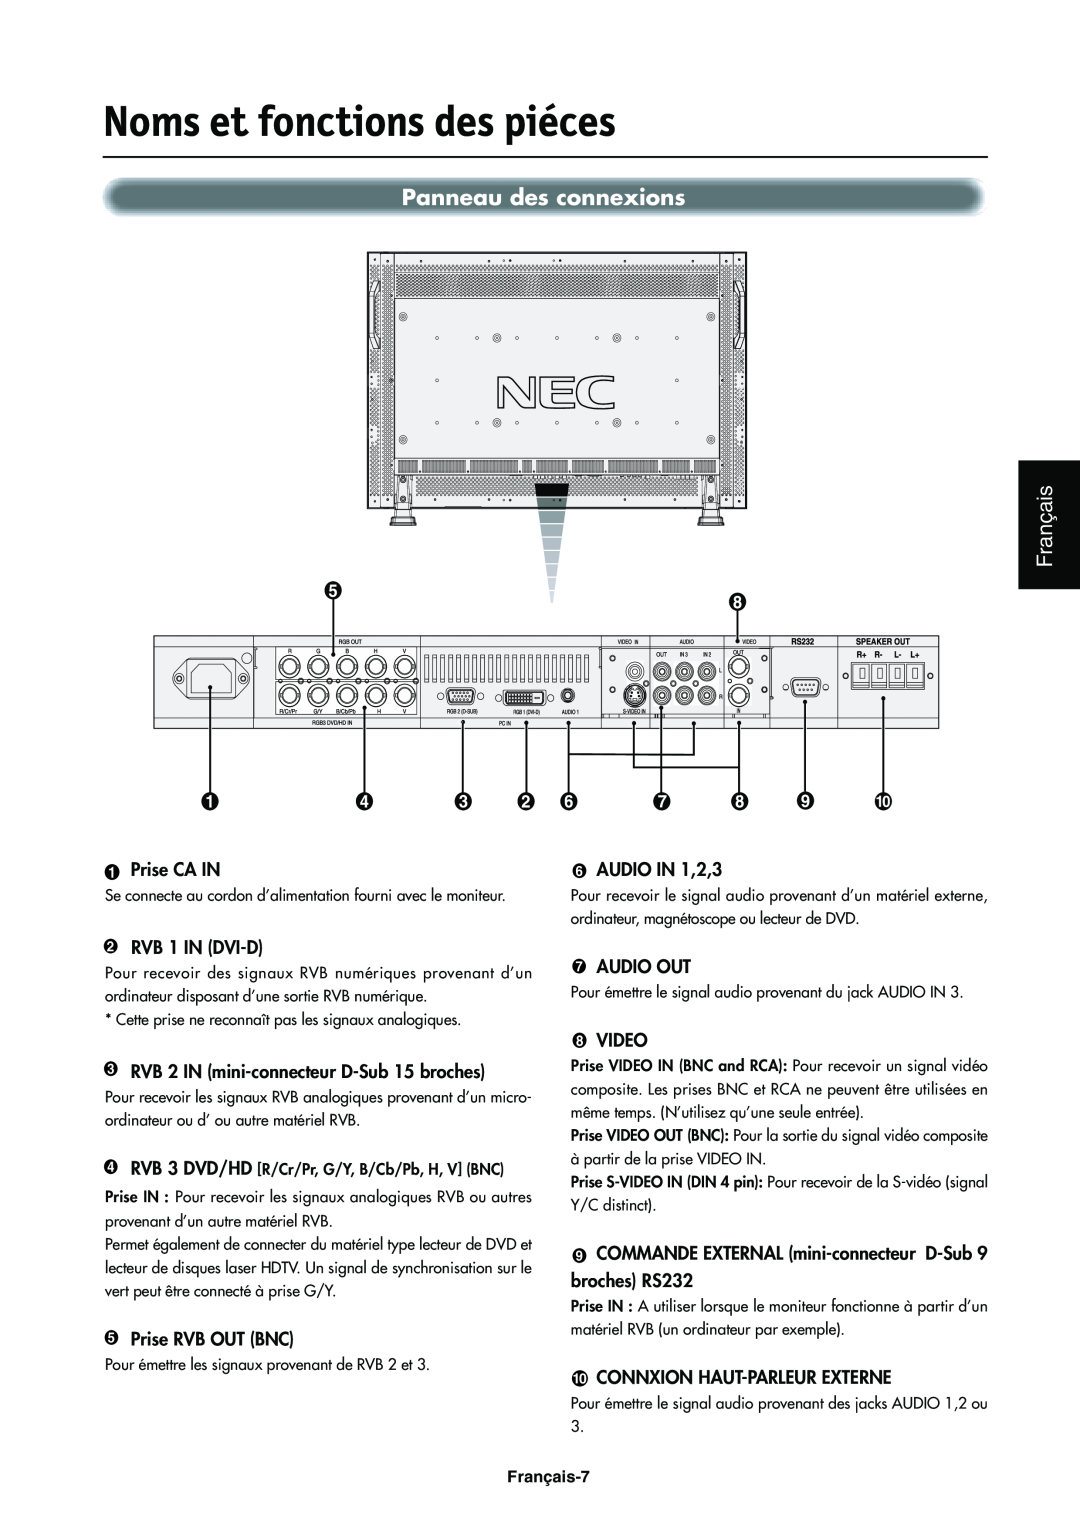 NEC LCD4000e Panneau des connexions, Noms et fonctions des piéces, Français, 1Prise CA IN, 6AUDIO IN 1,2,3, 7AUDIO OUT 